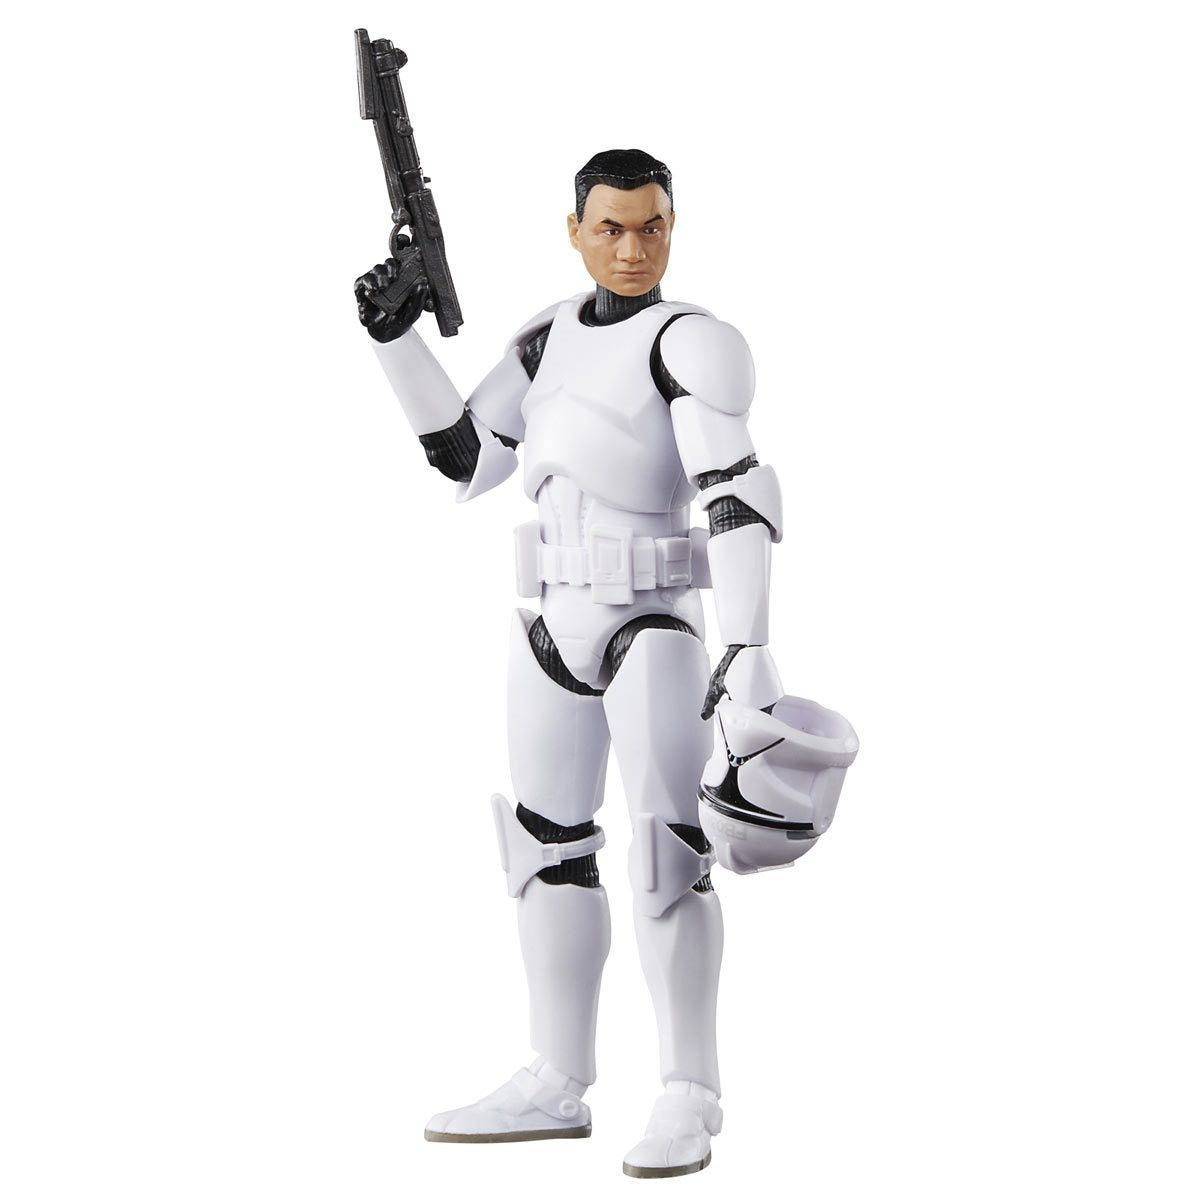 PREVENTA - Phase I Clone Trooper, Star Wars The Black Series - Precio $649